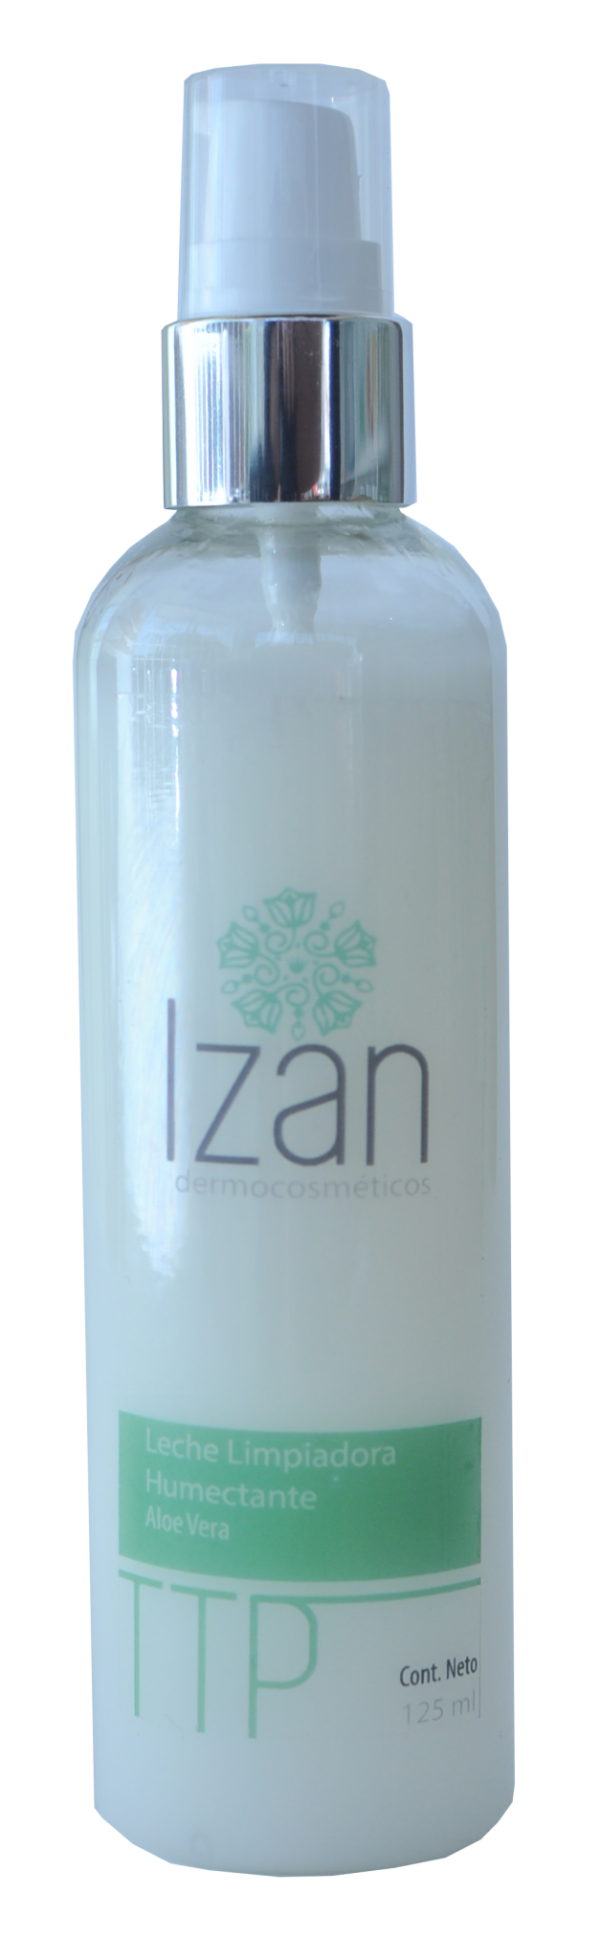 Leche limpiadora humectante IZAN Dermocosméticos productos